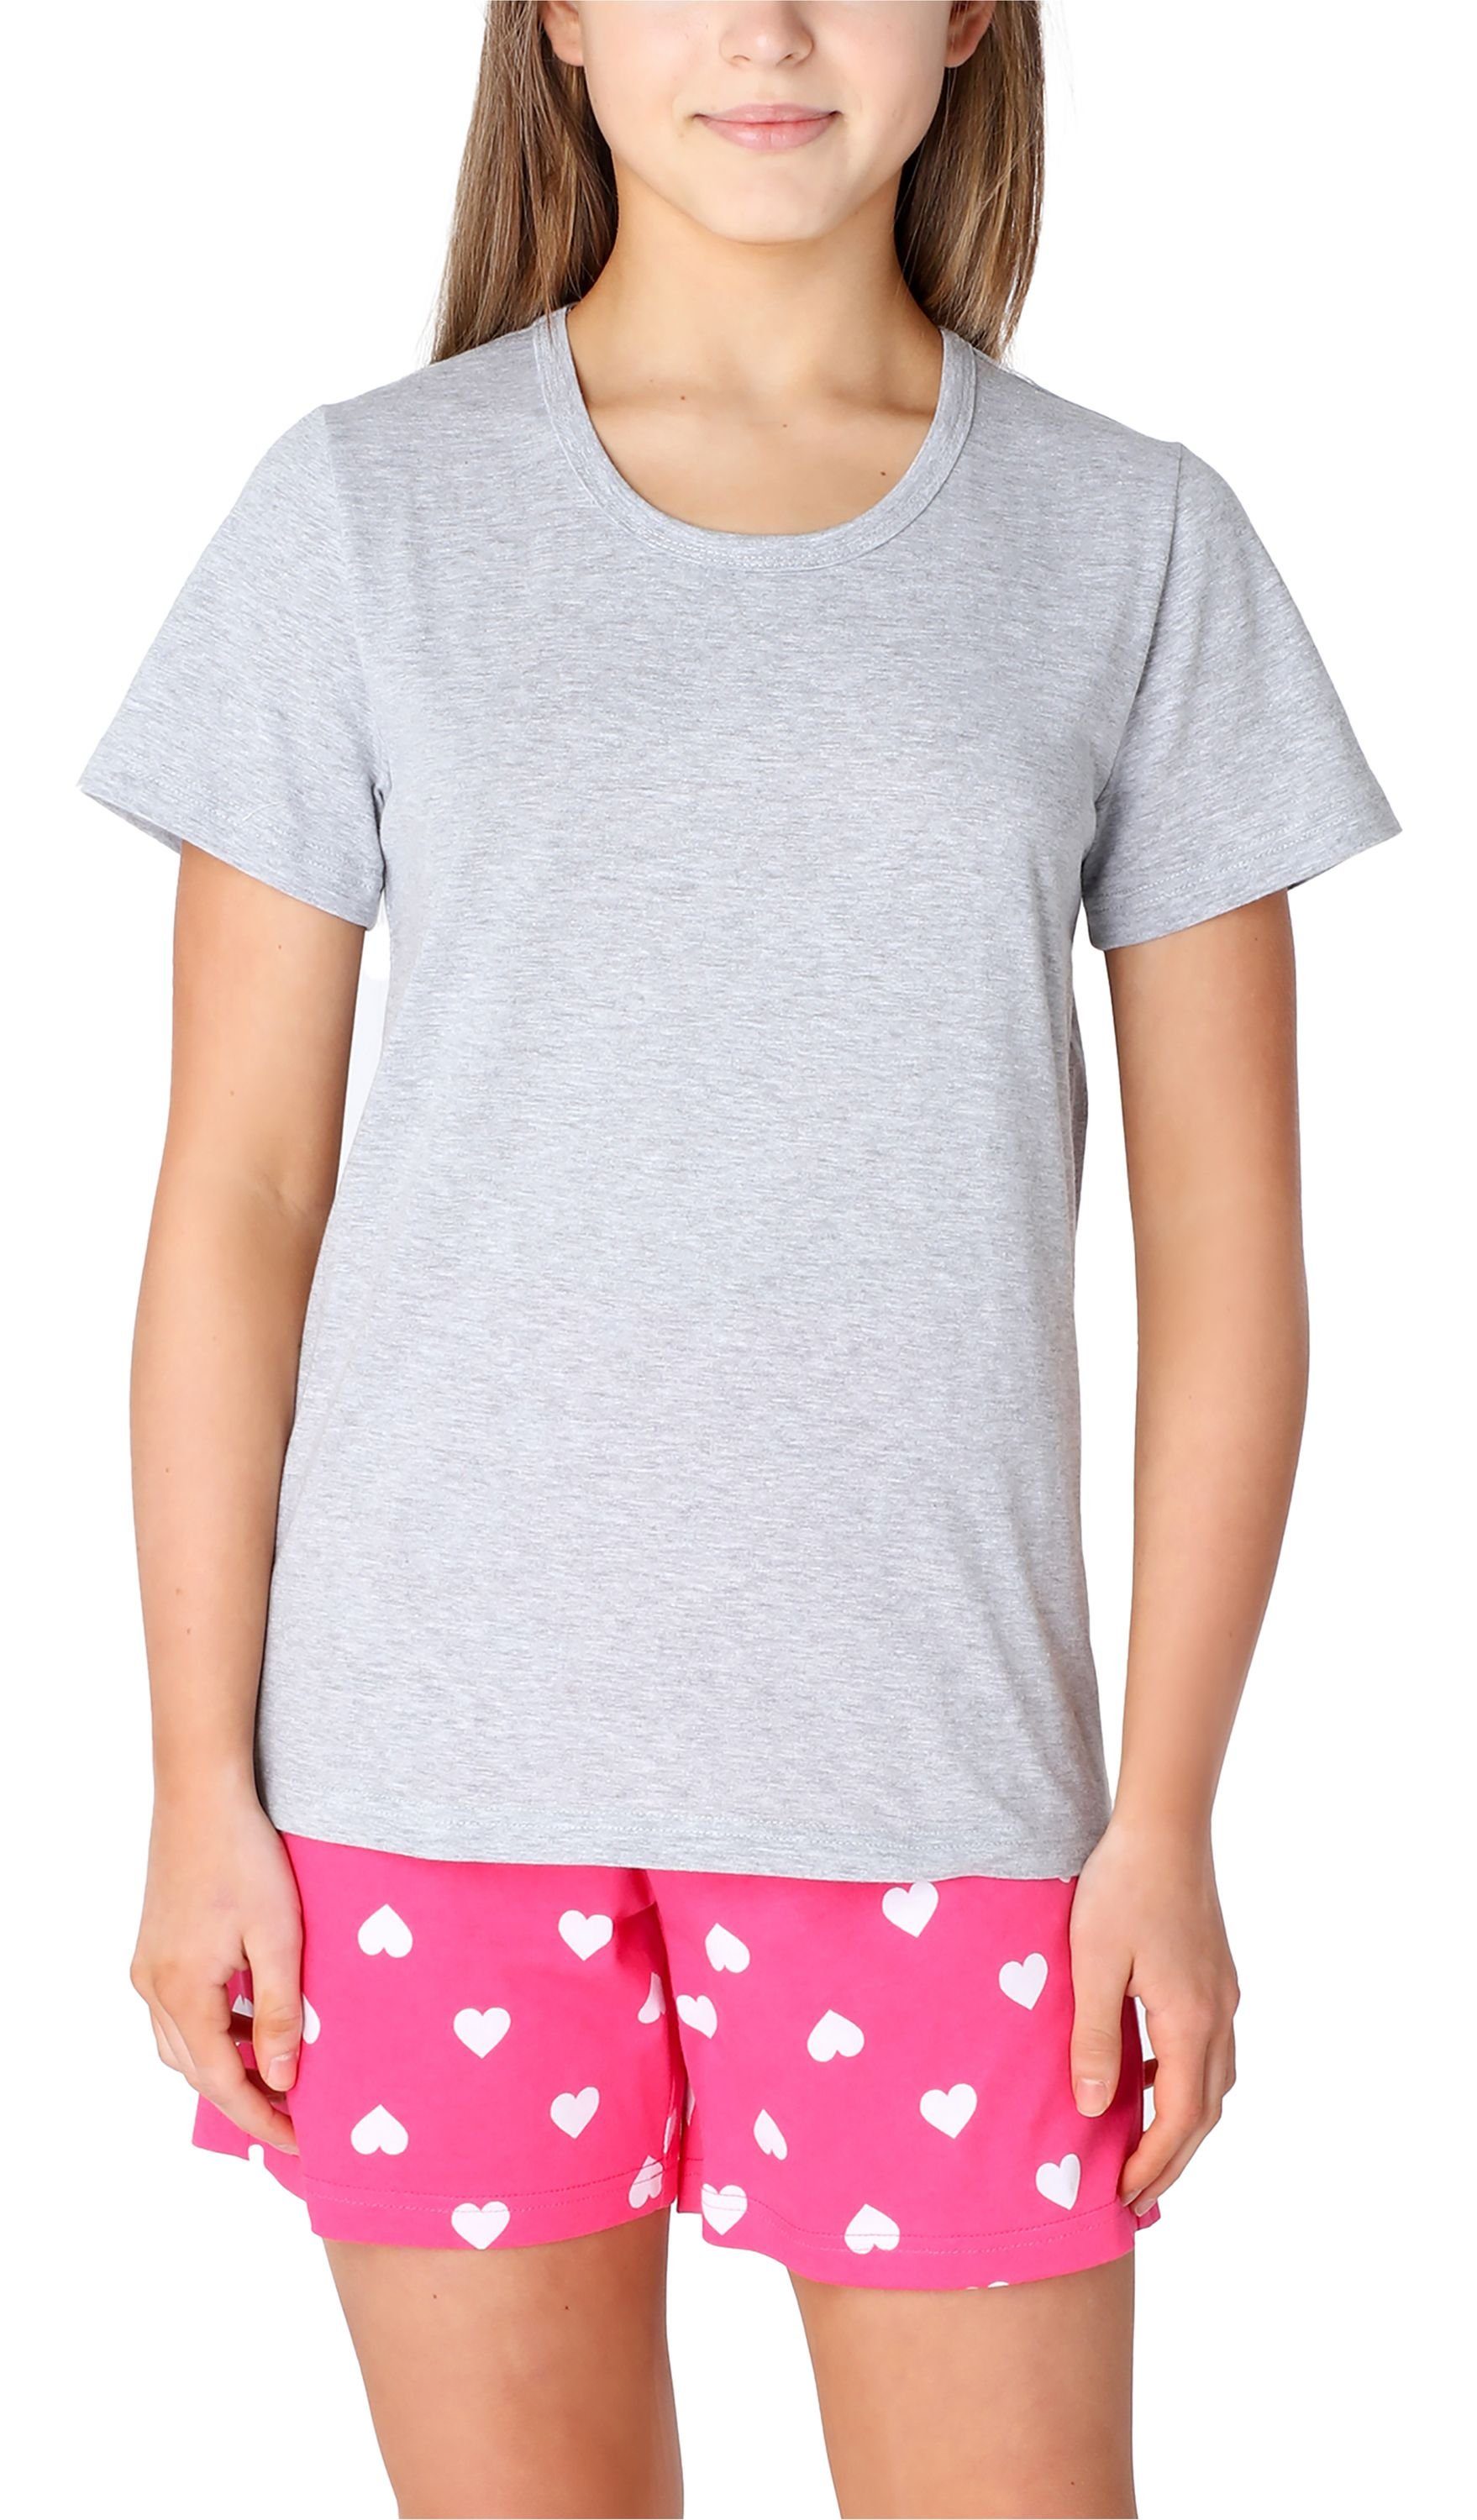 Merry Style Schlafanzug Mädchen Schlafanzüge Kurz aus Baumwolle Pyjama Set MS10-265 Melange/Rosa/Herzen